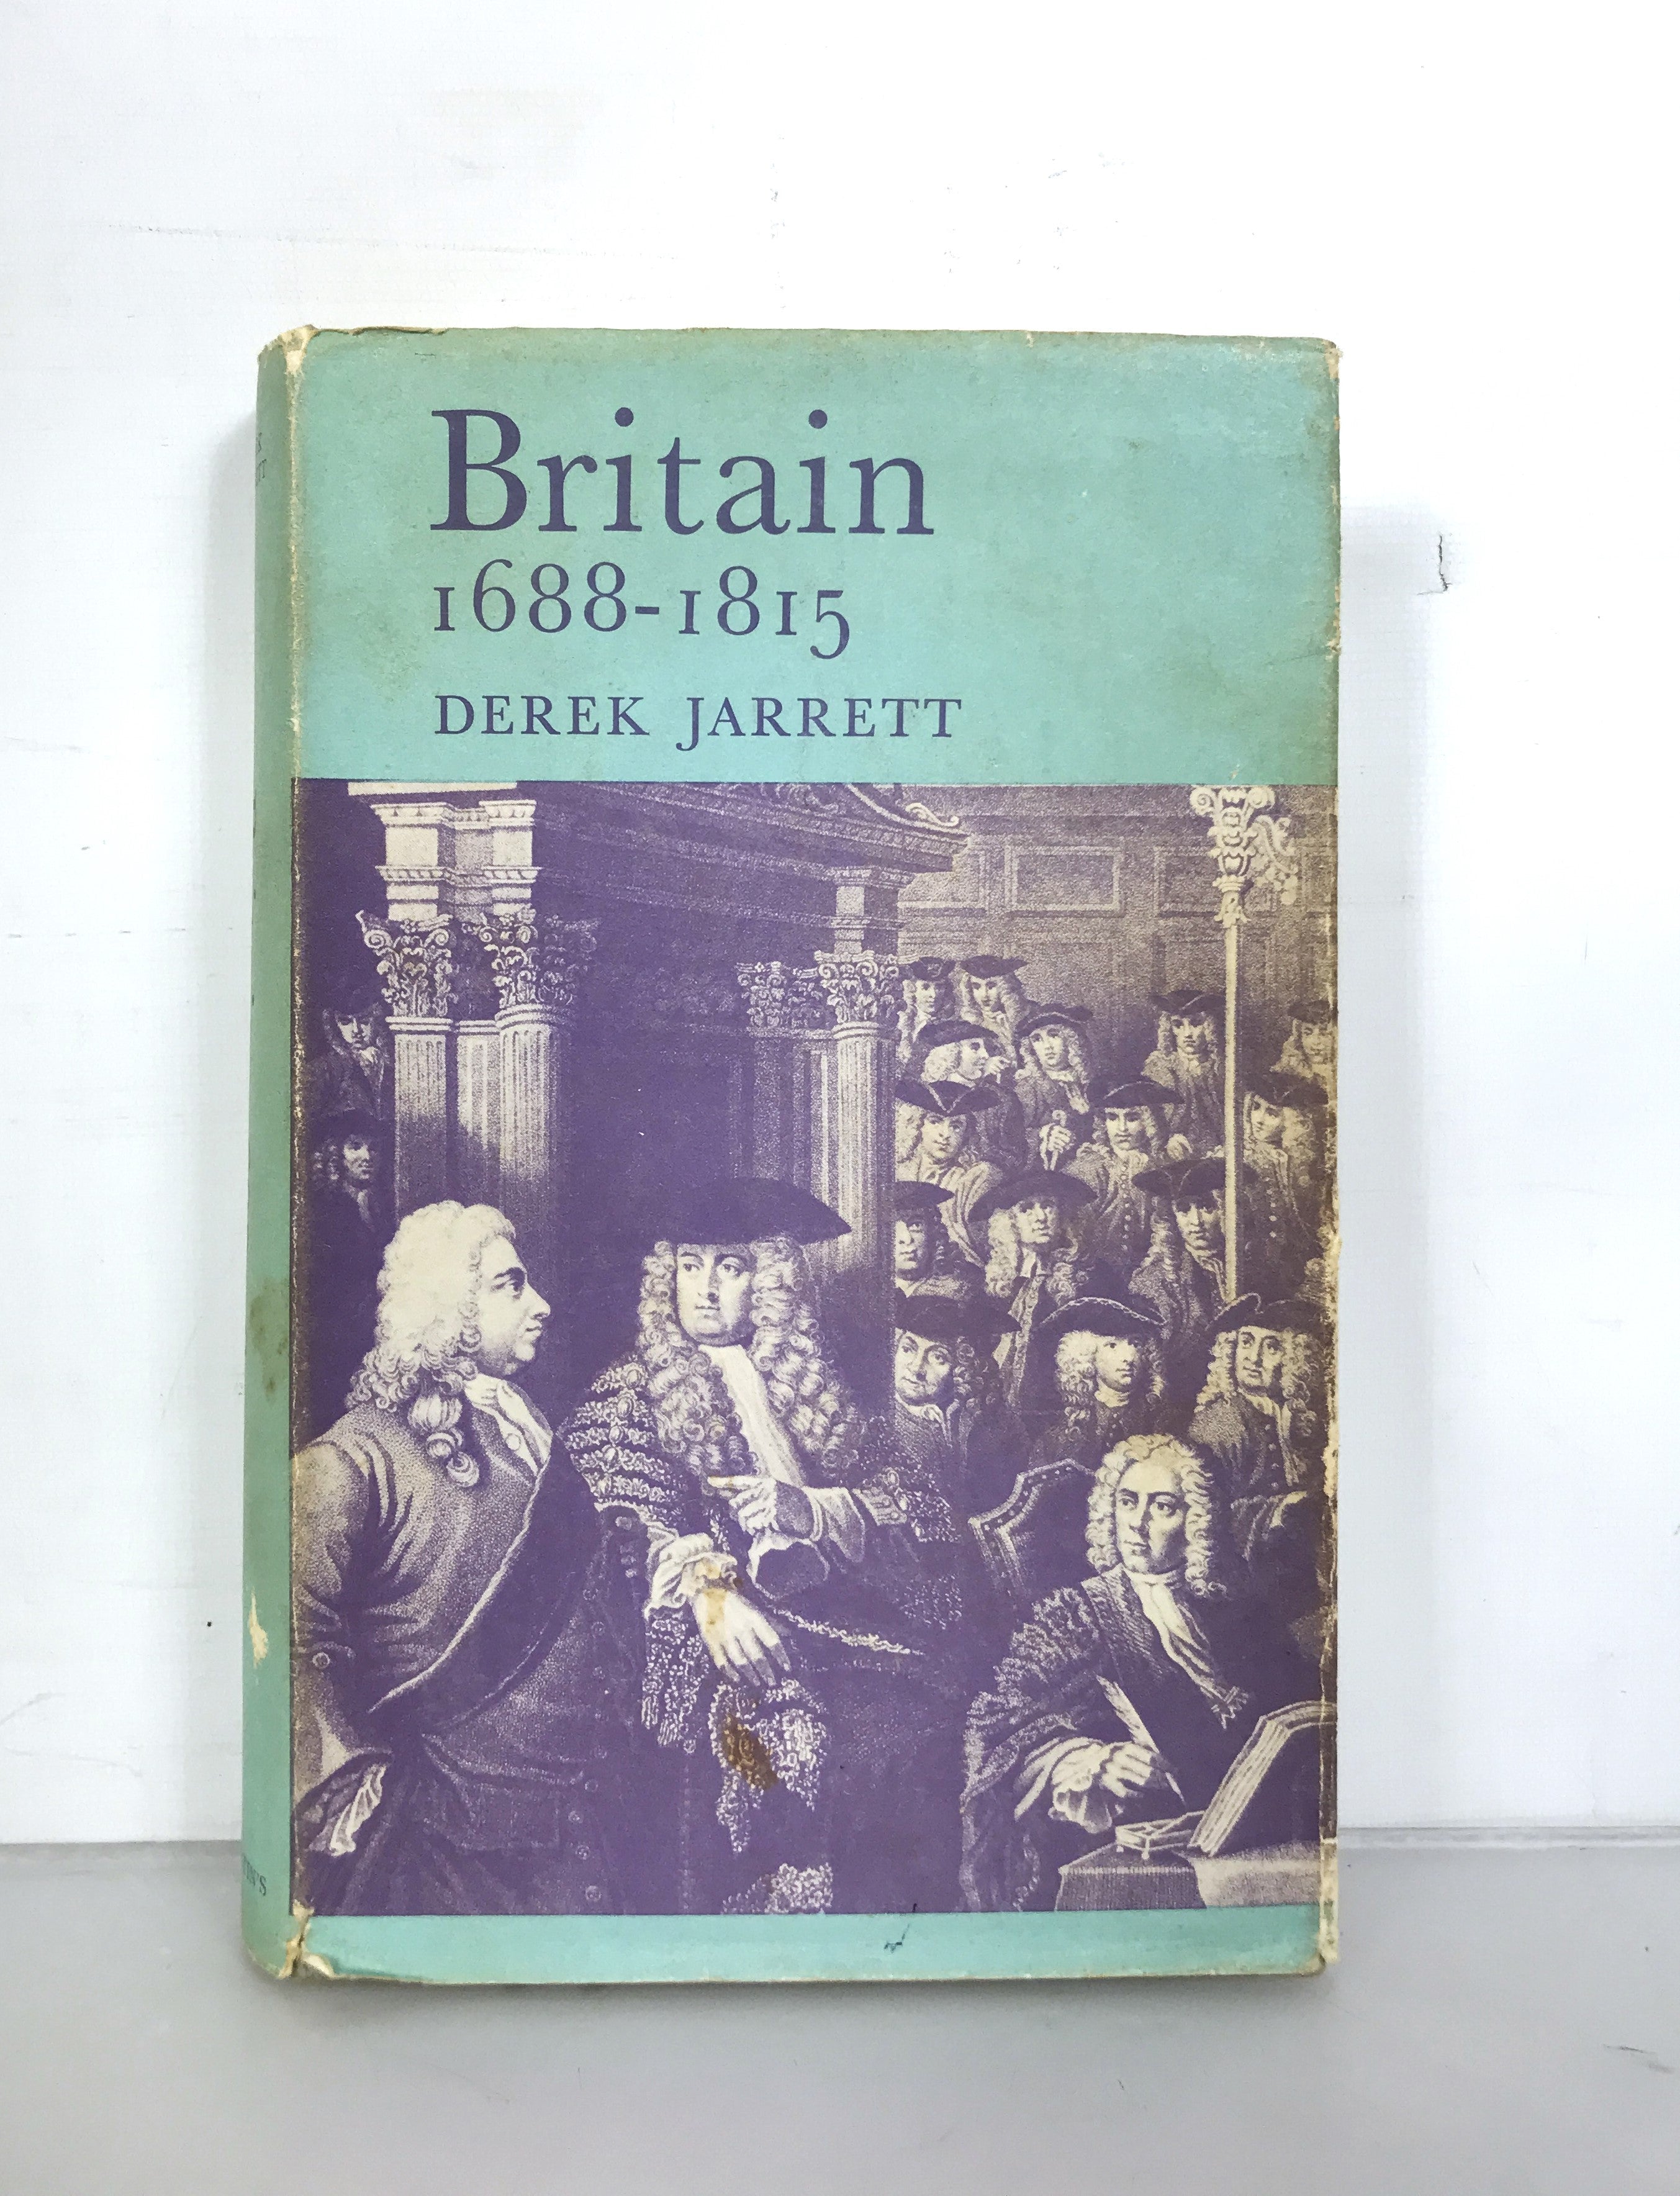 Britain 1688-1815 by Derek Jarrett Third Impression 1967 HC DJ